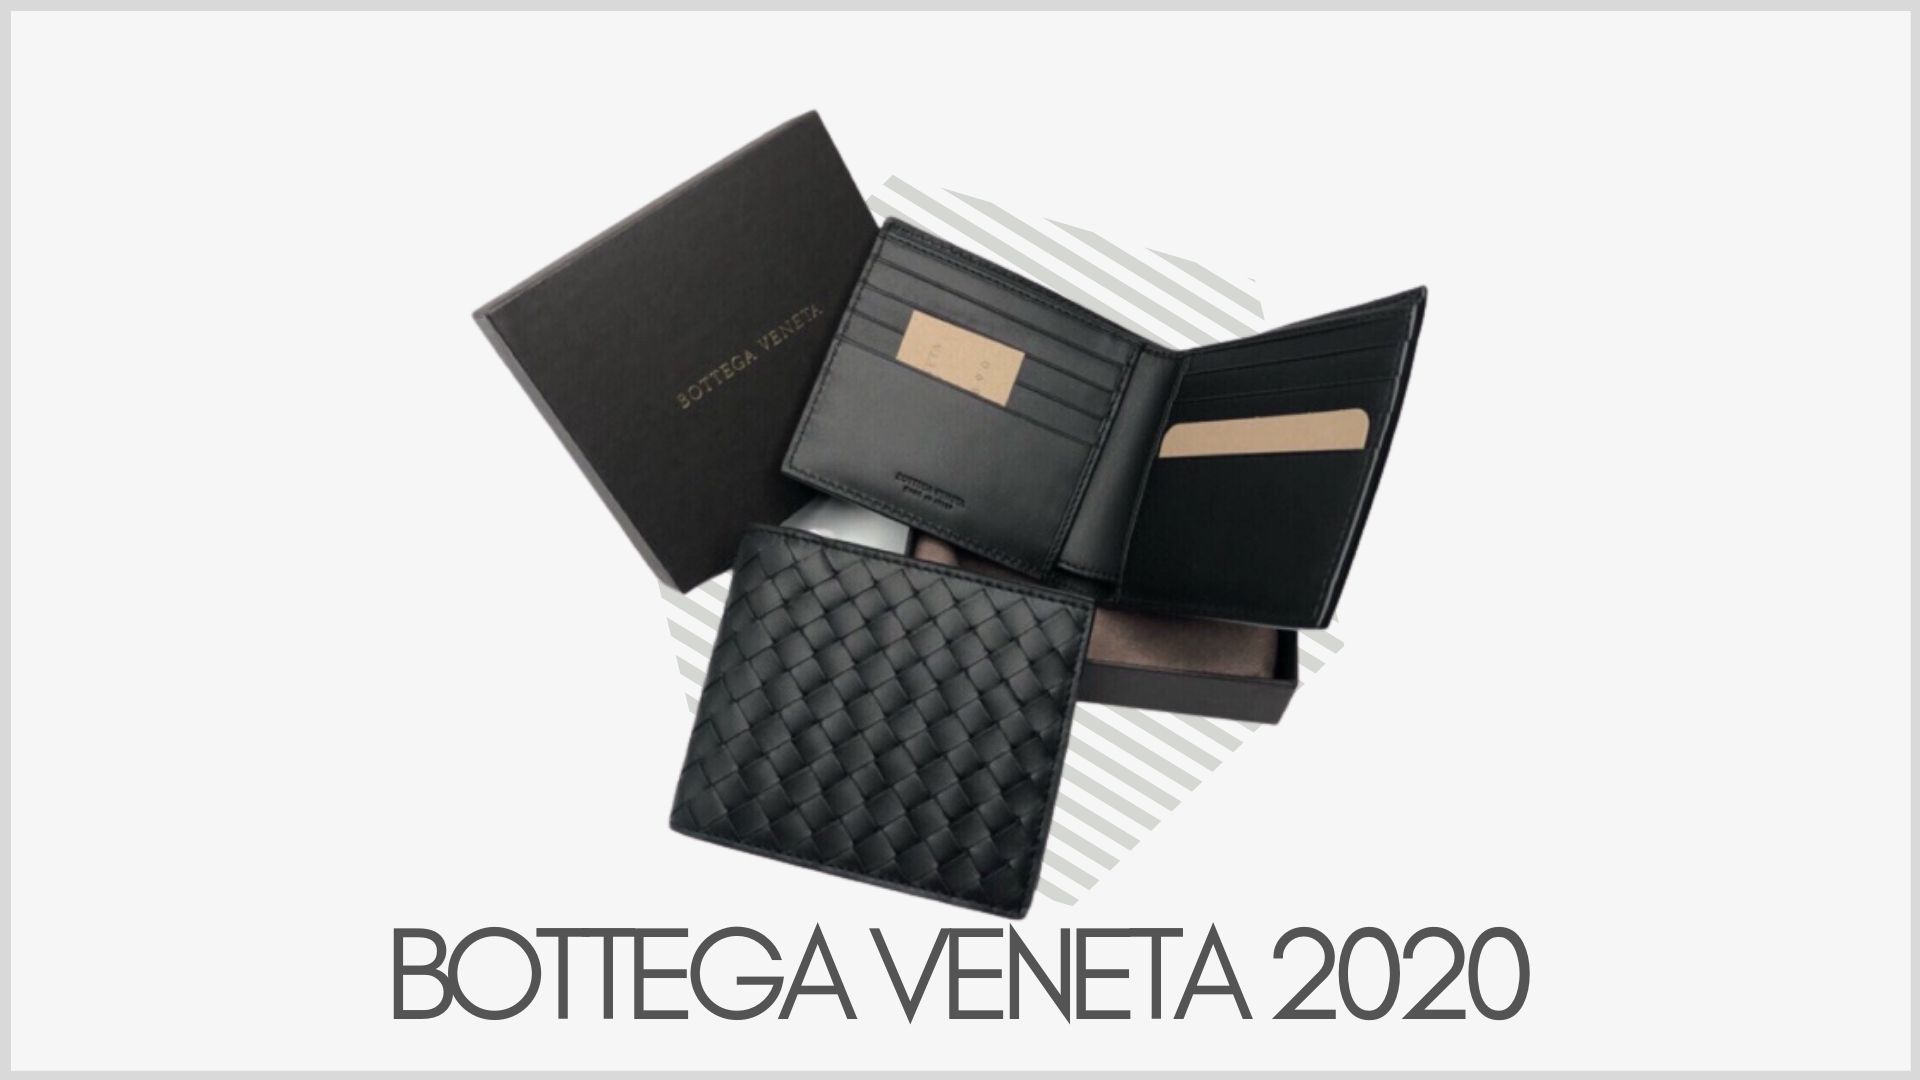 รวมกระเป๋าตังค์ Bottega Veneta รุ่นฮิตในปี 2020